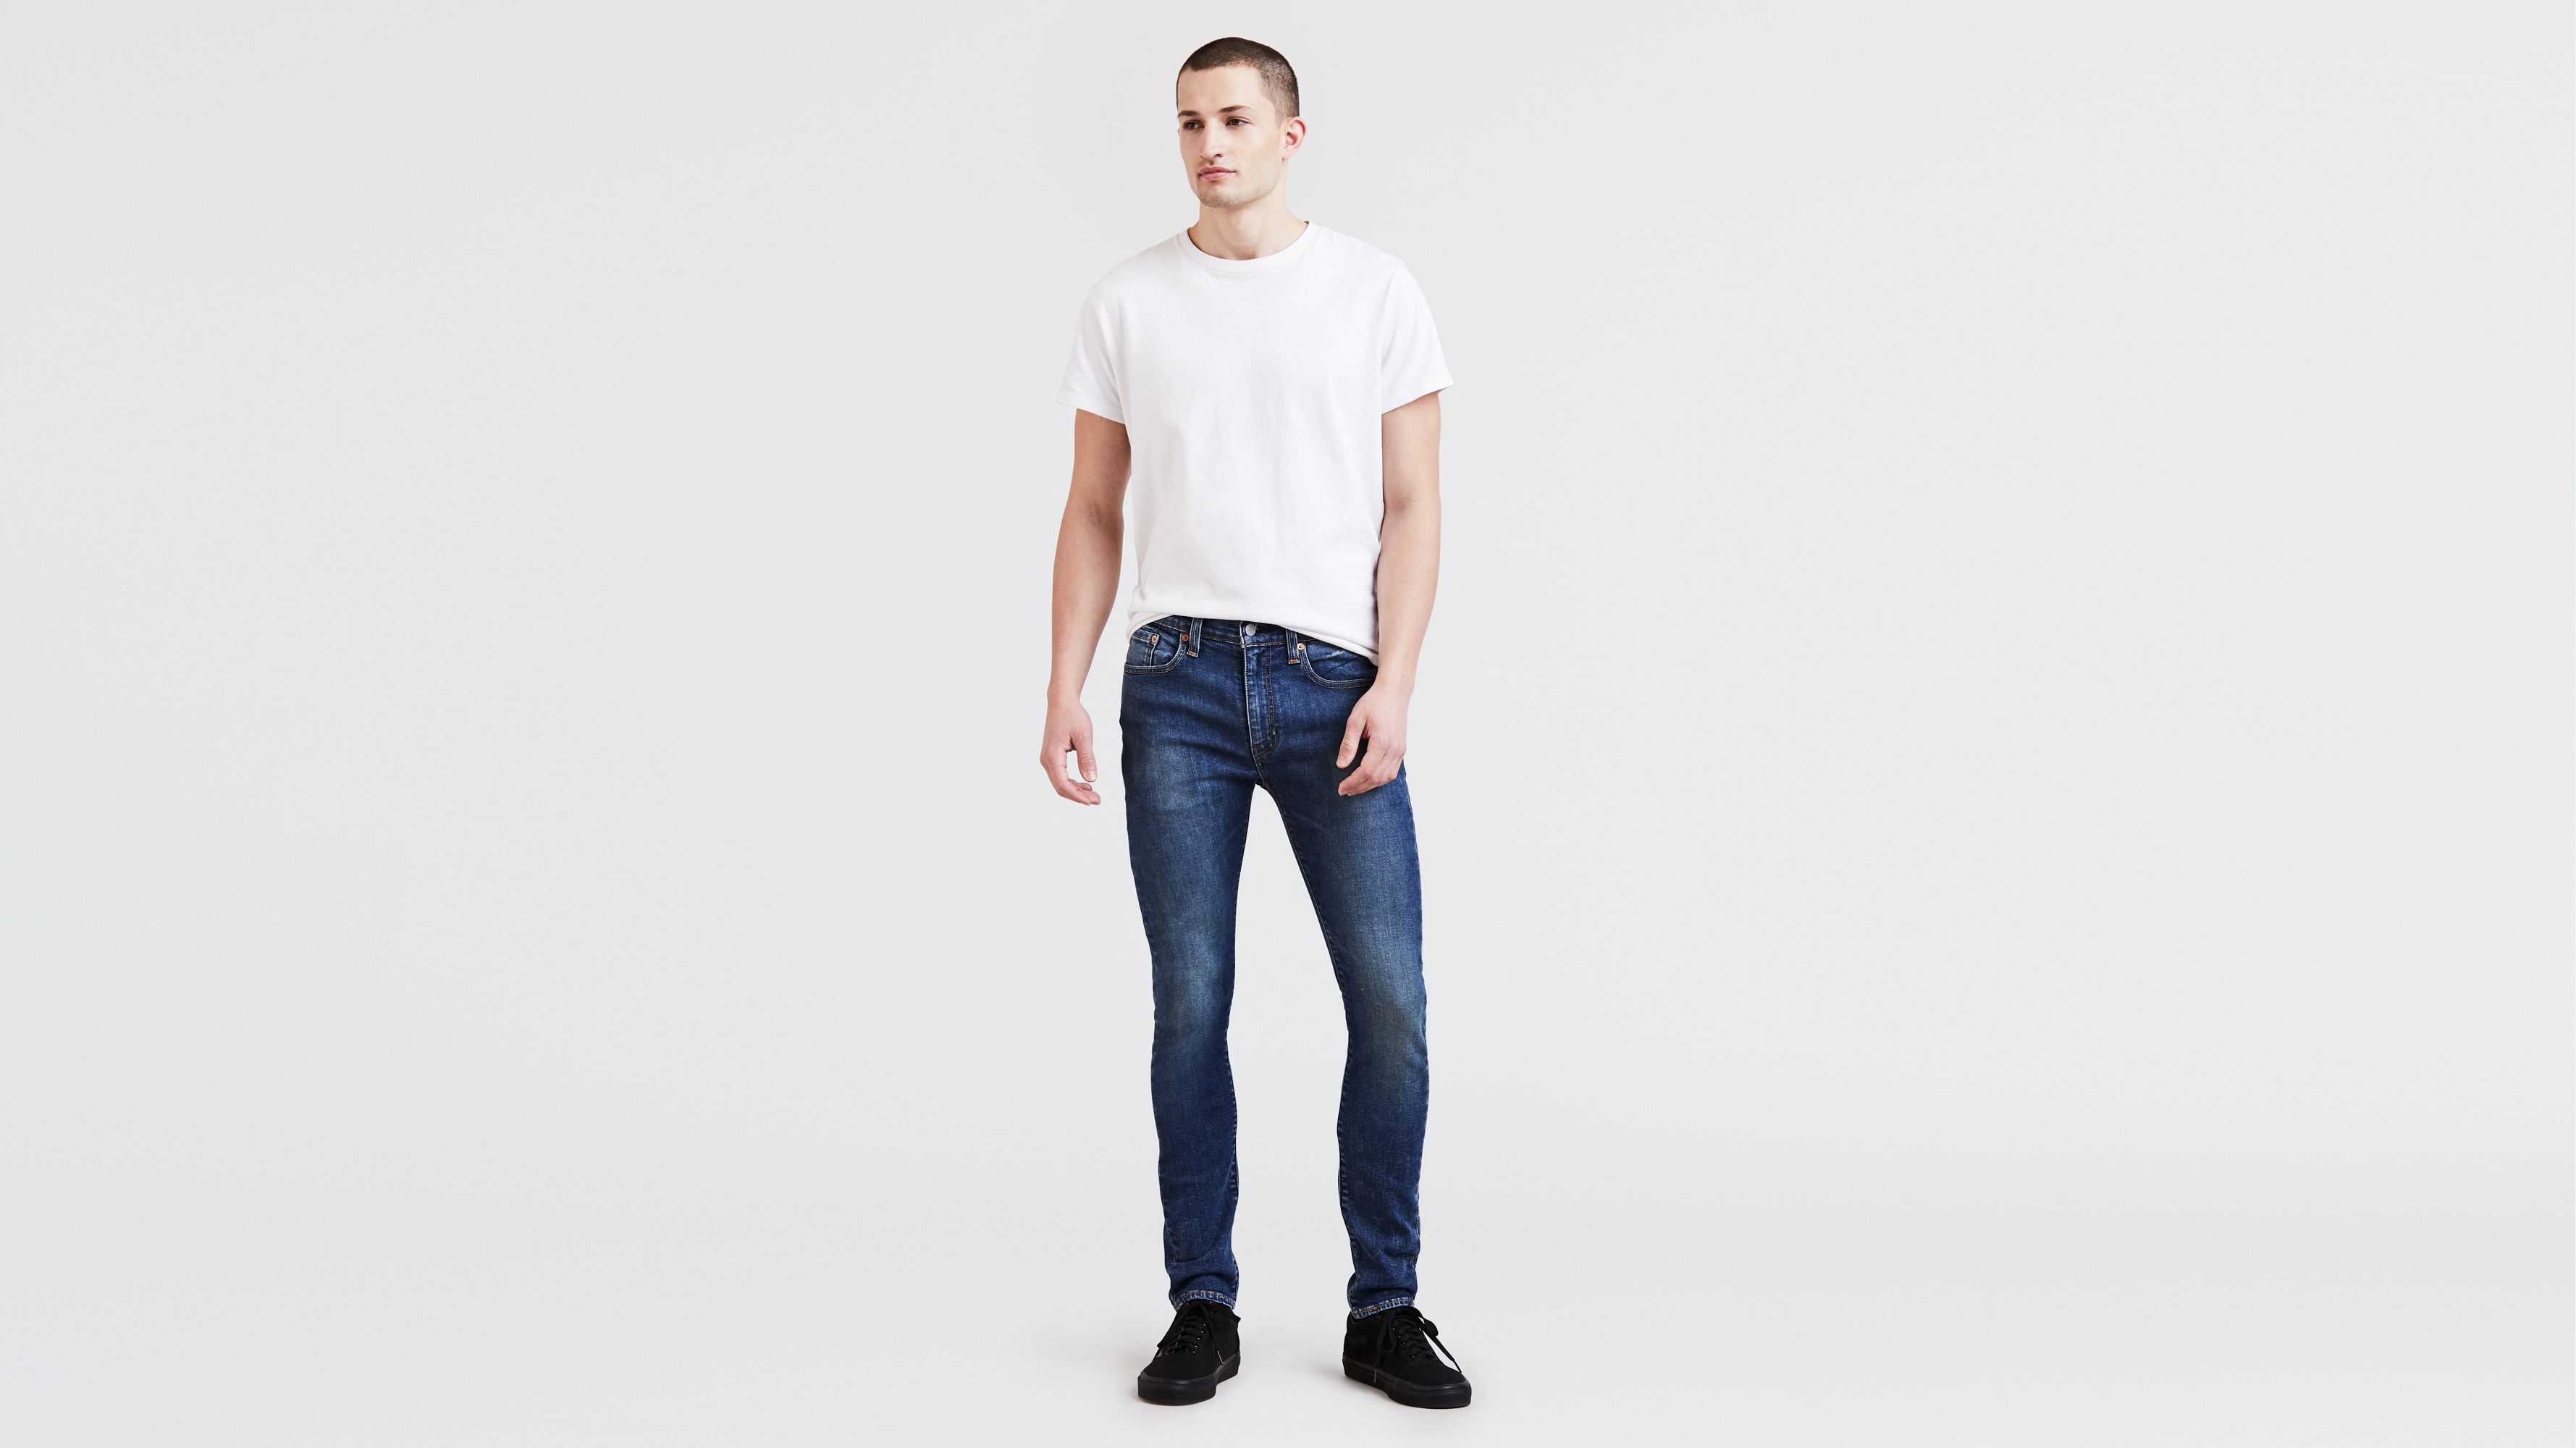 men's 519 levi jeans